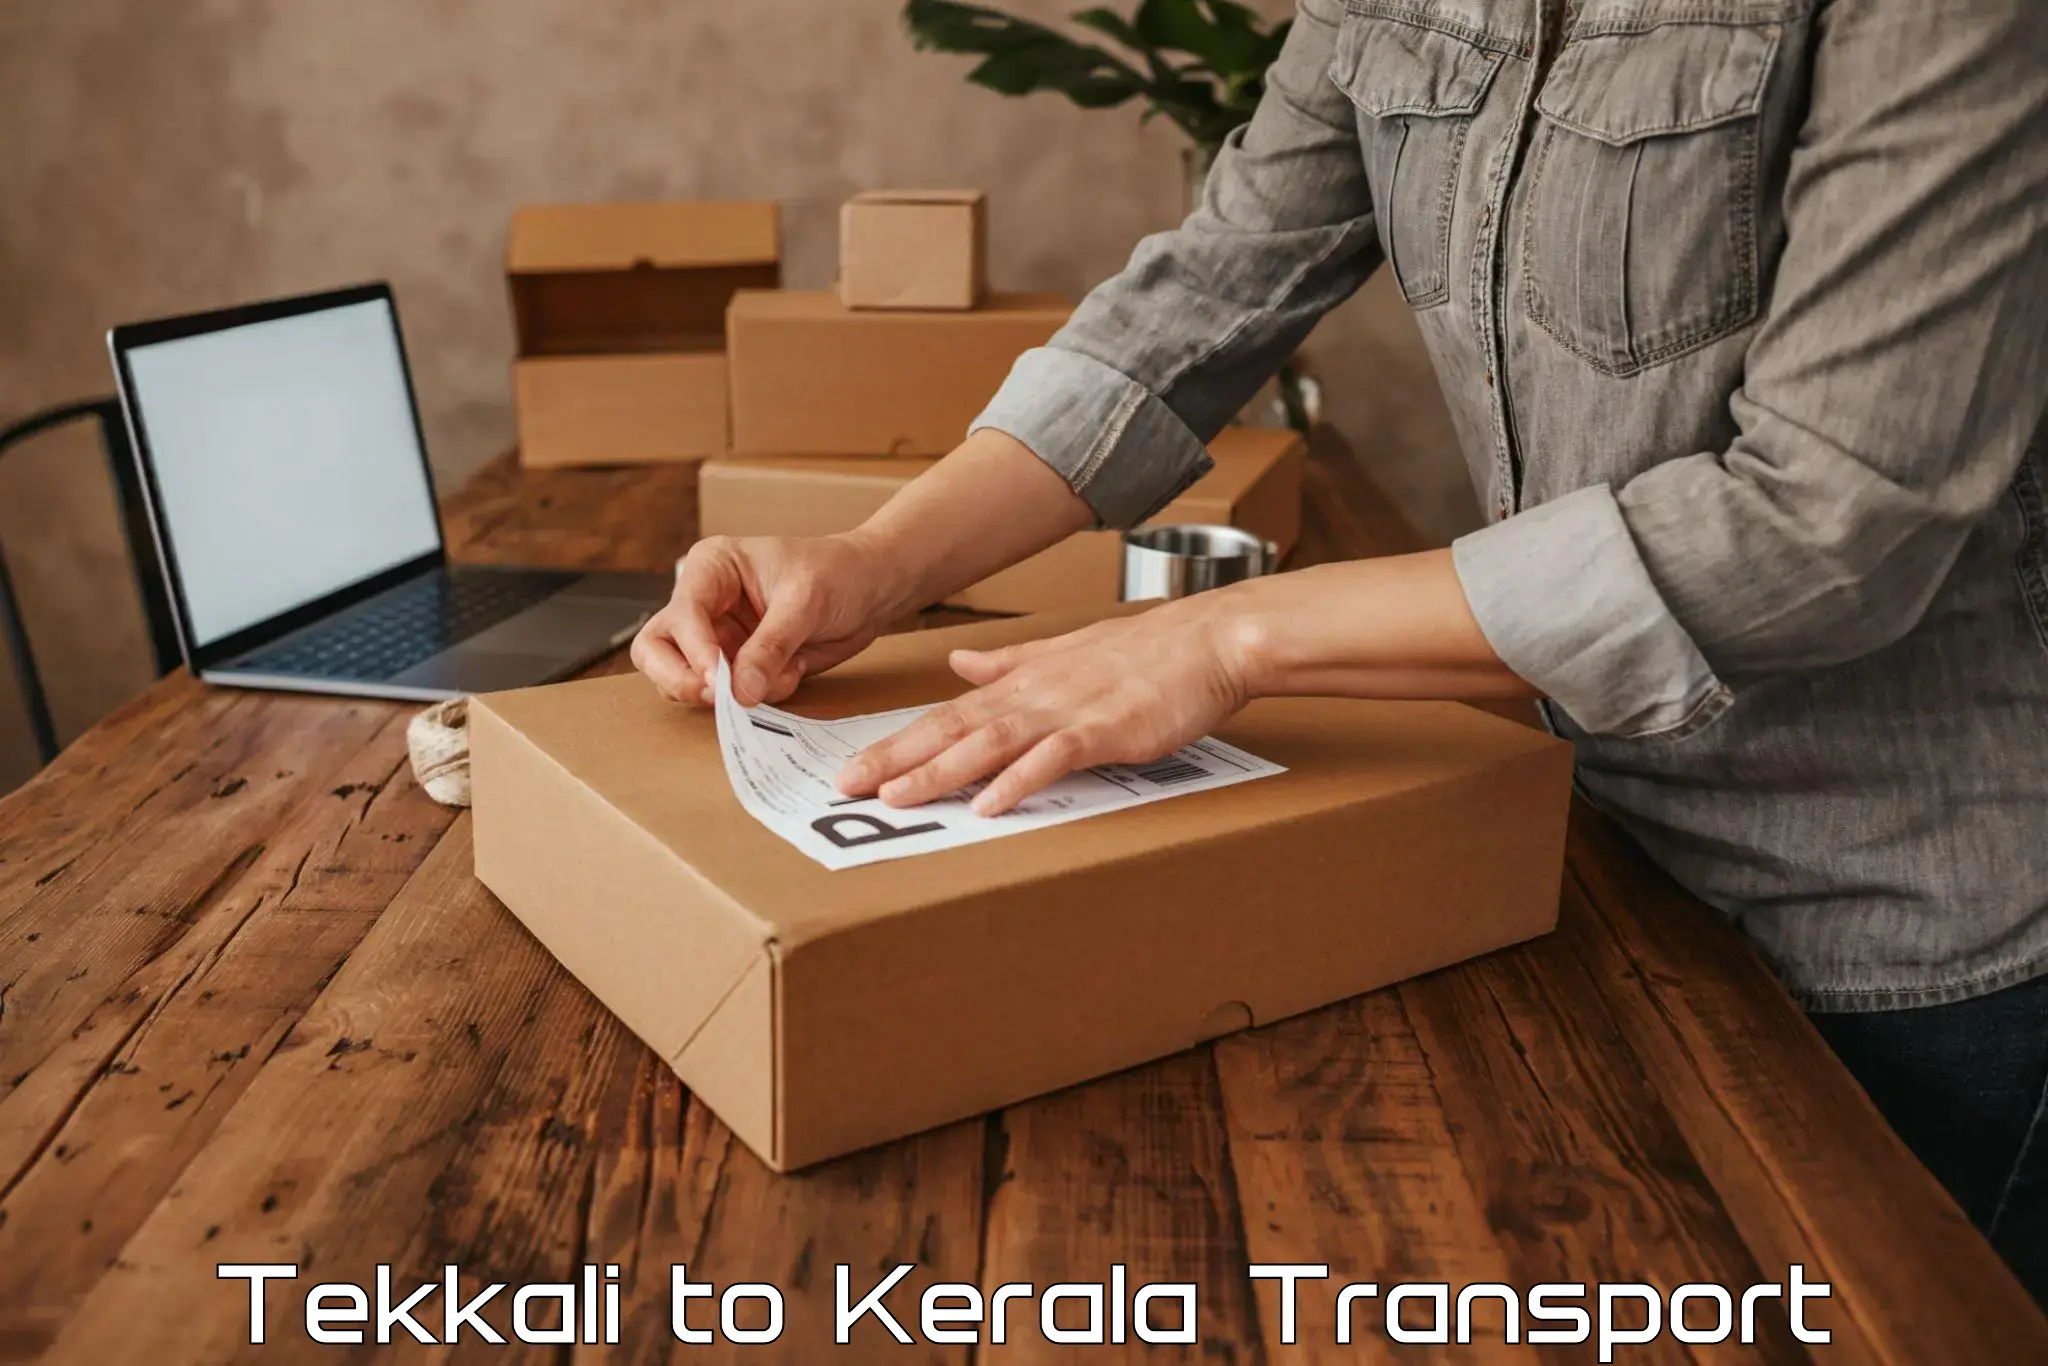 Online transport booking Tekkali to Vadakara